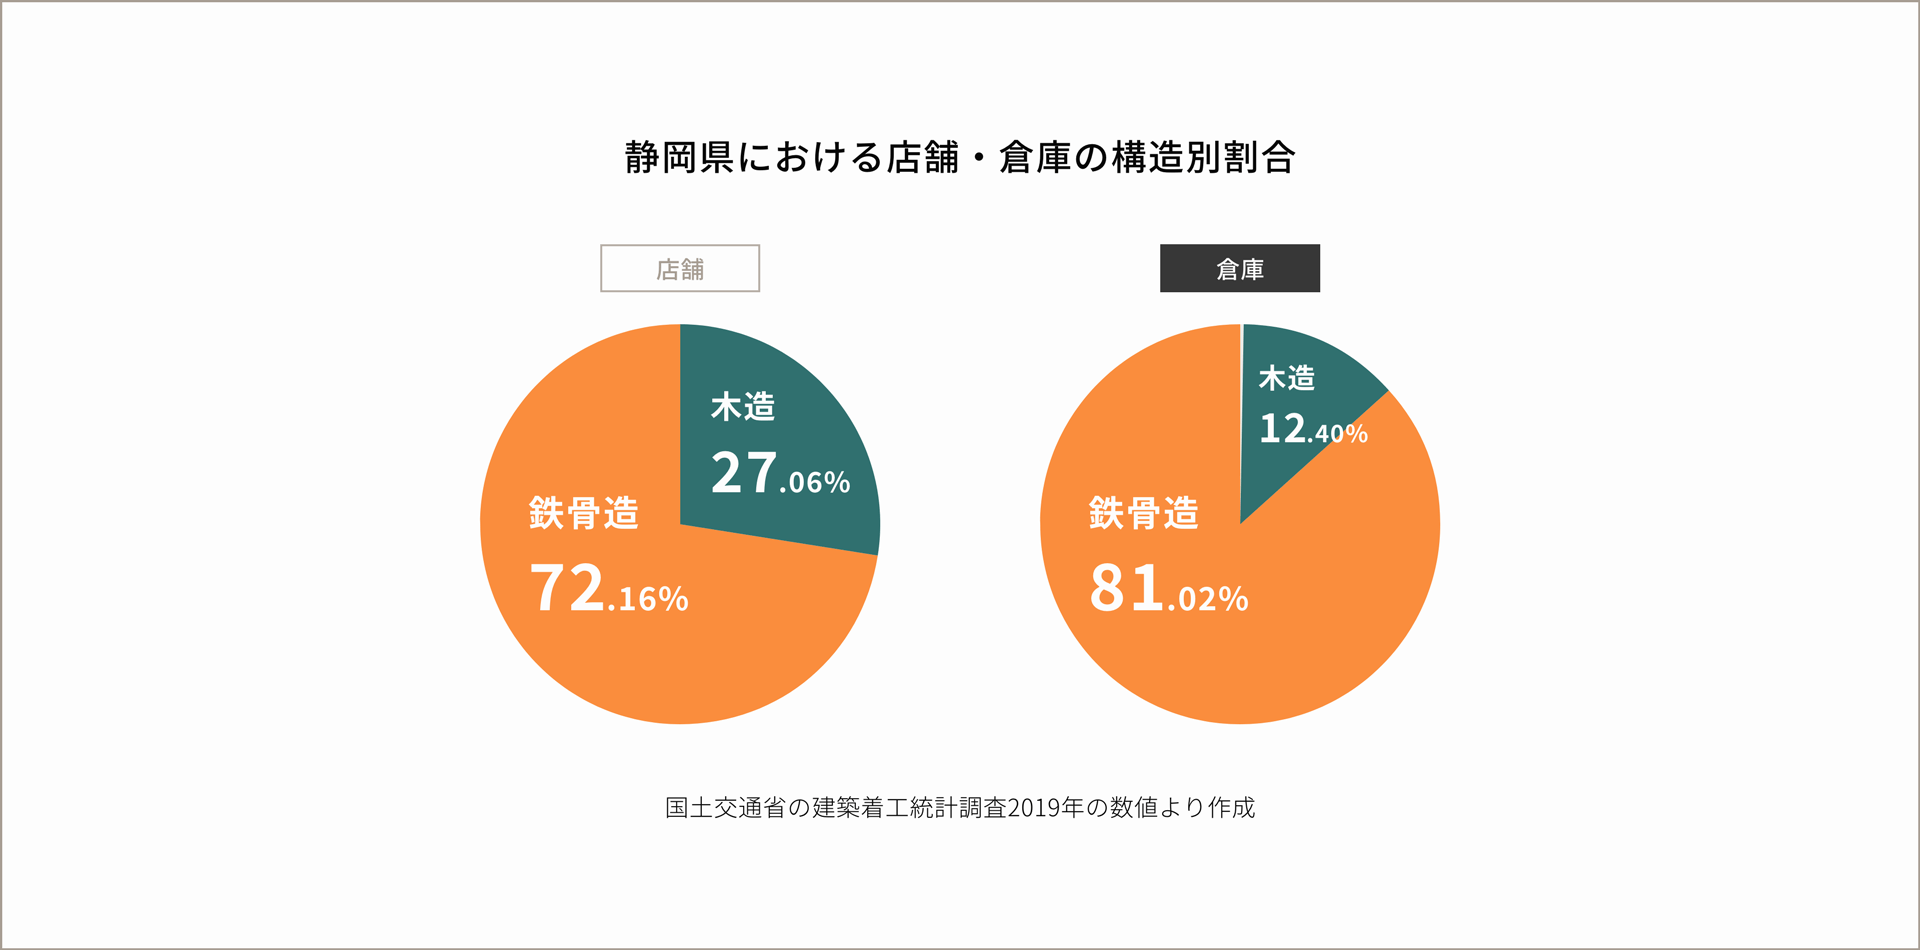 静岡県における店舗・倉庫の構造別割合